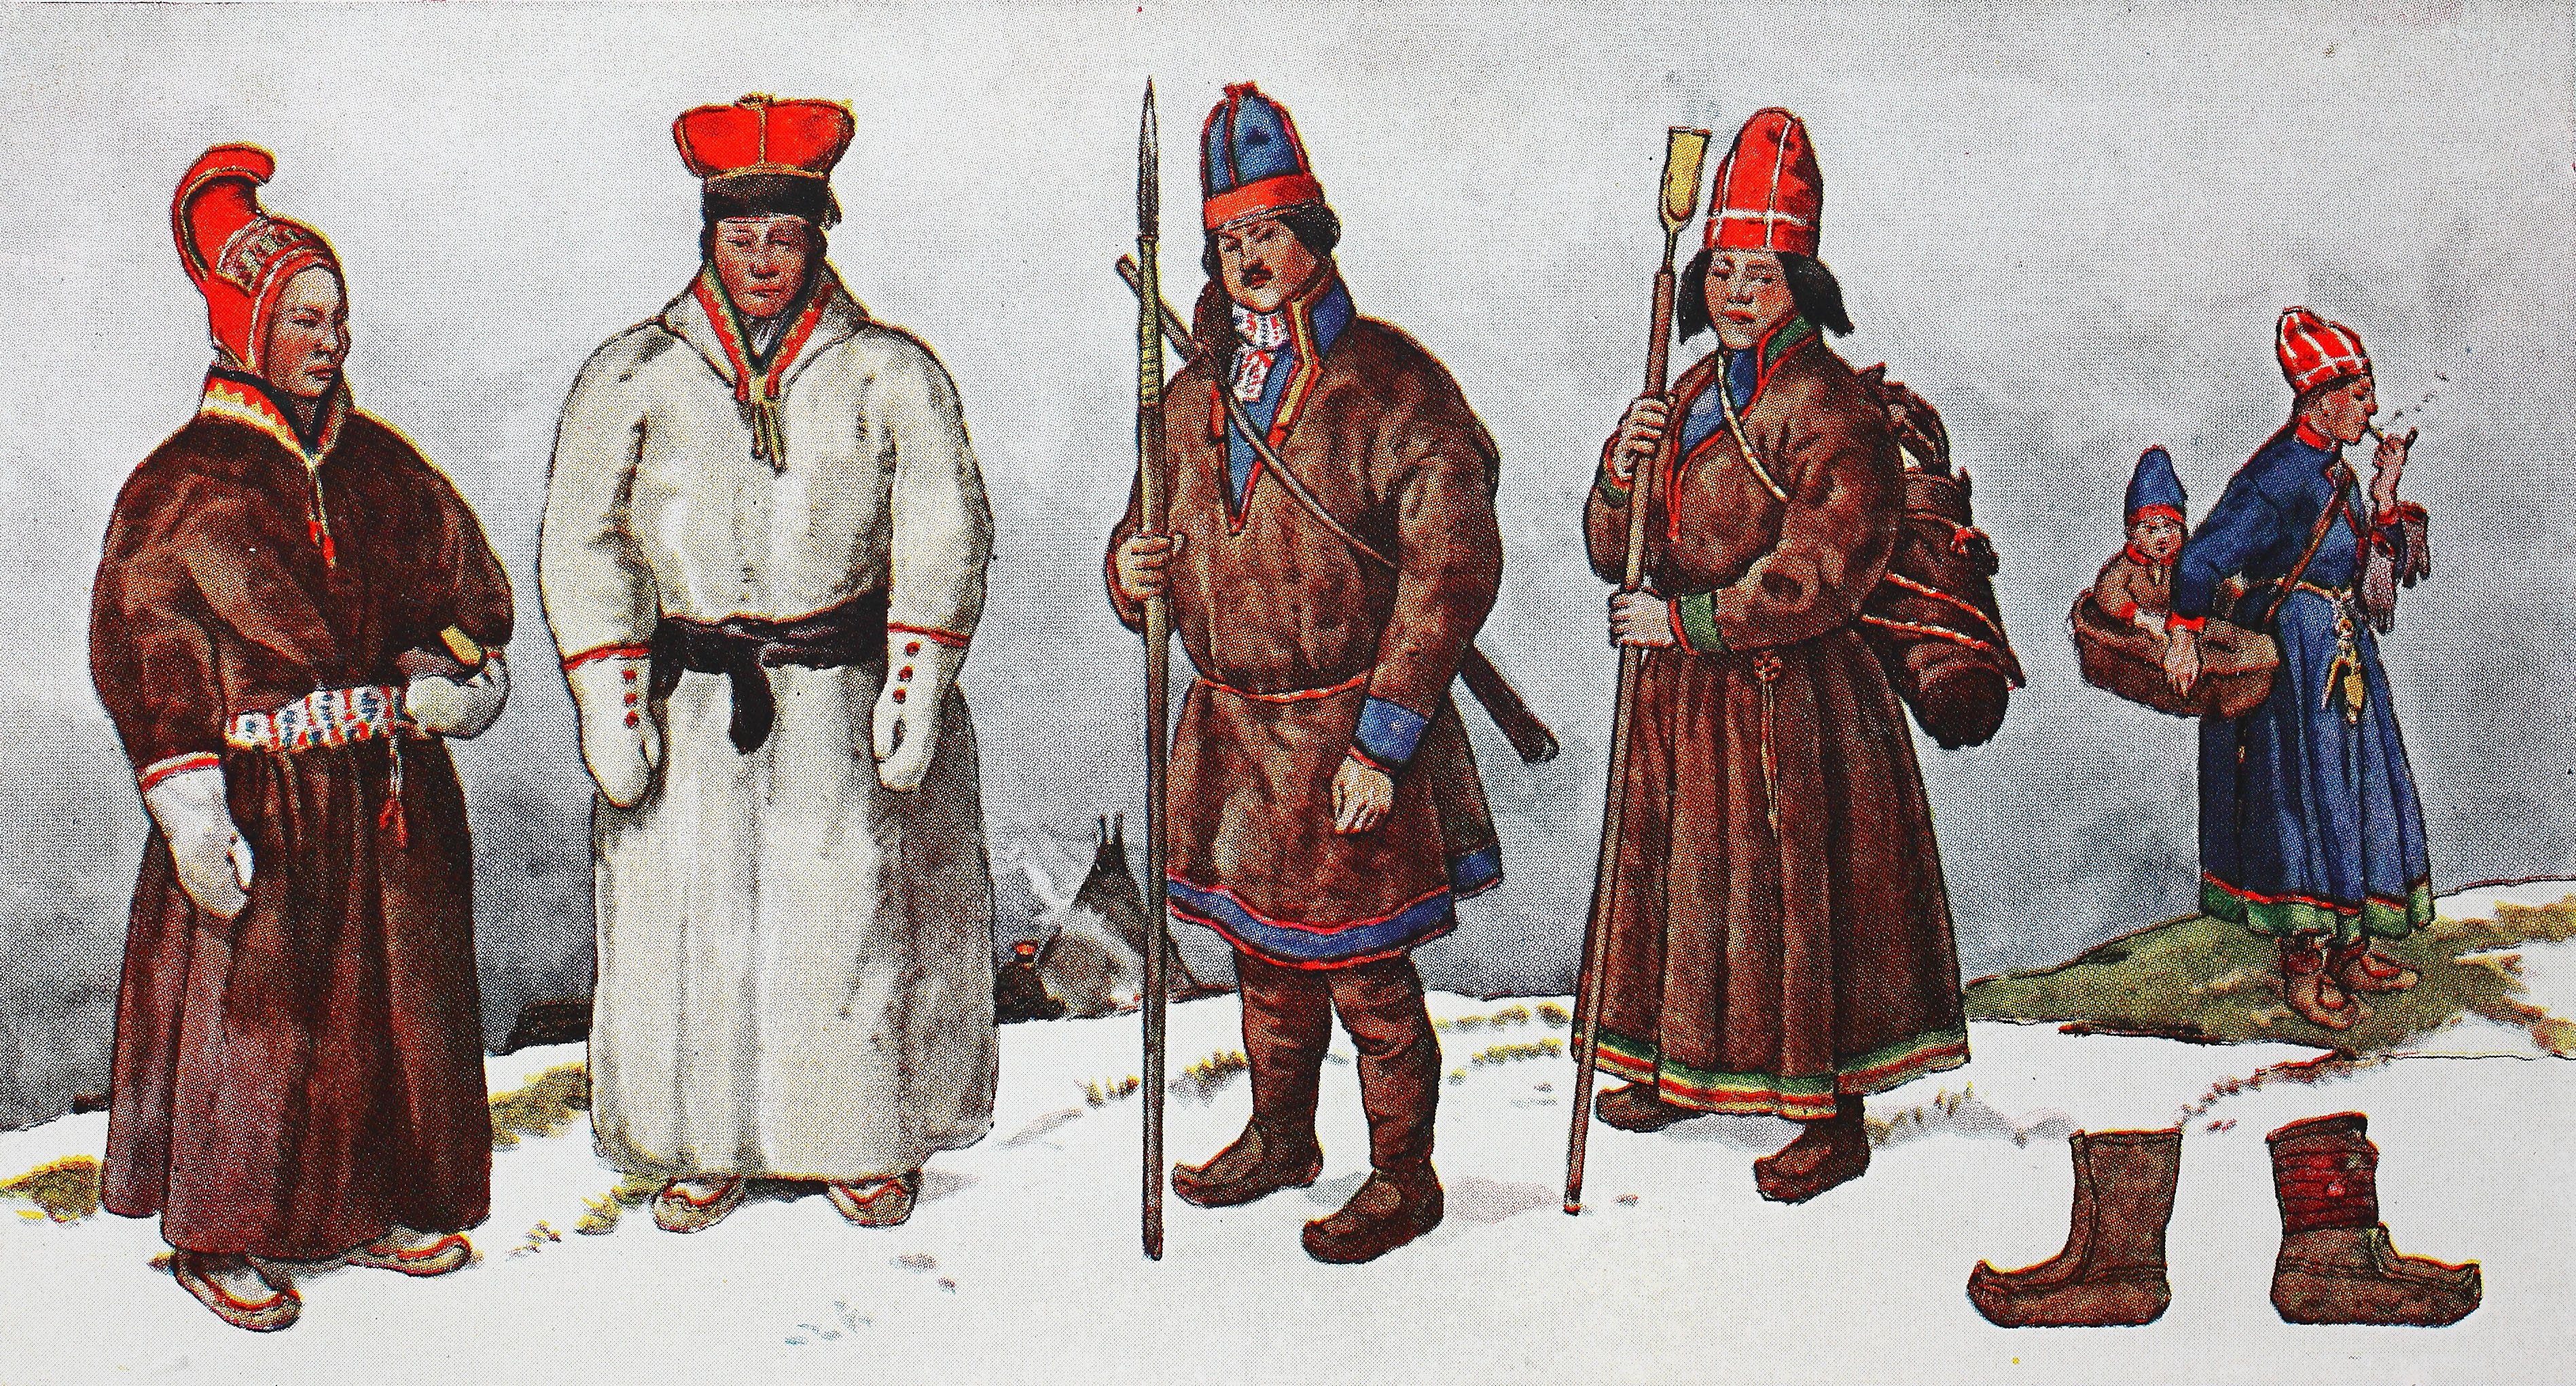 Roupa tradicional do povo Sámi